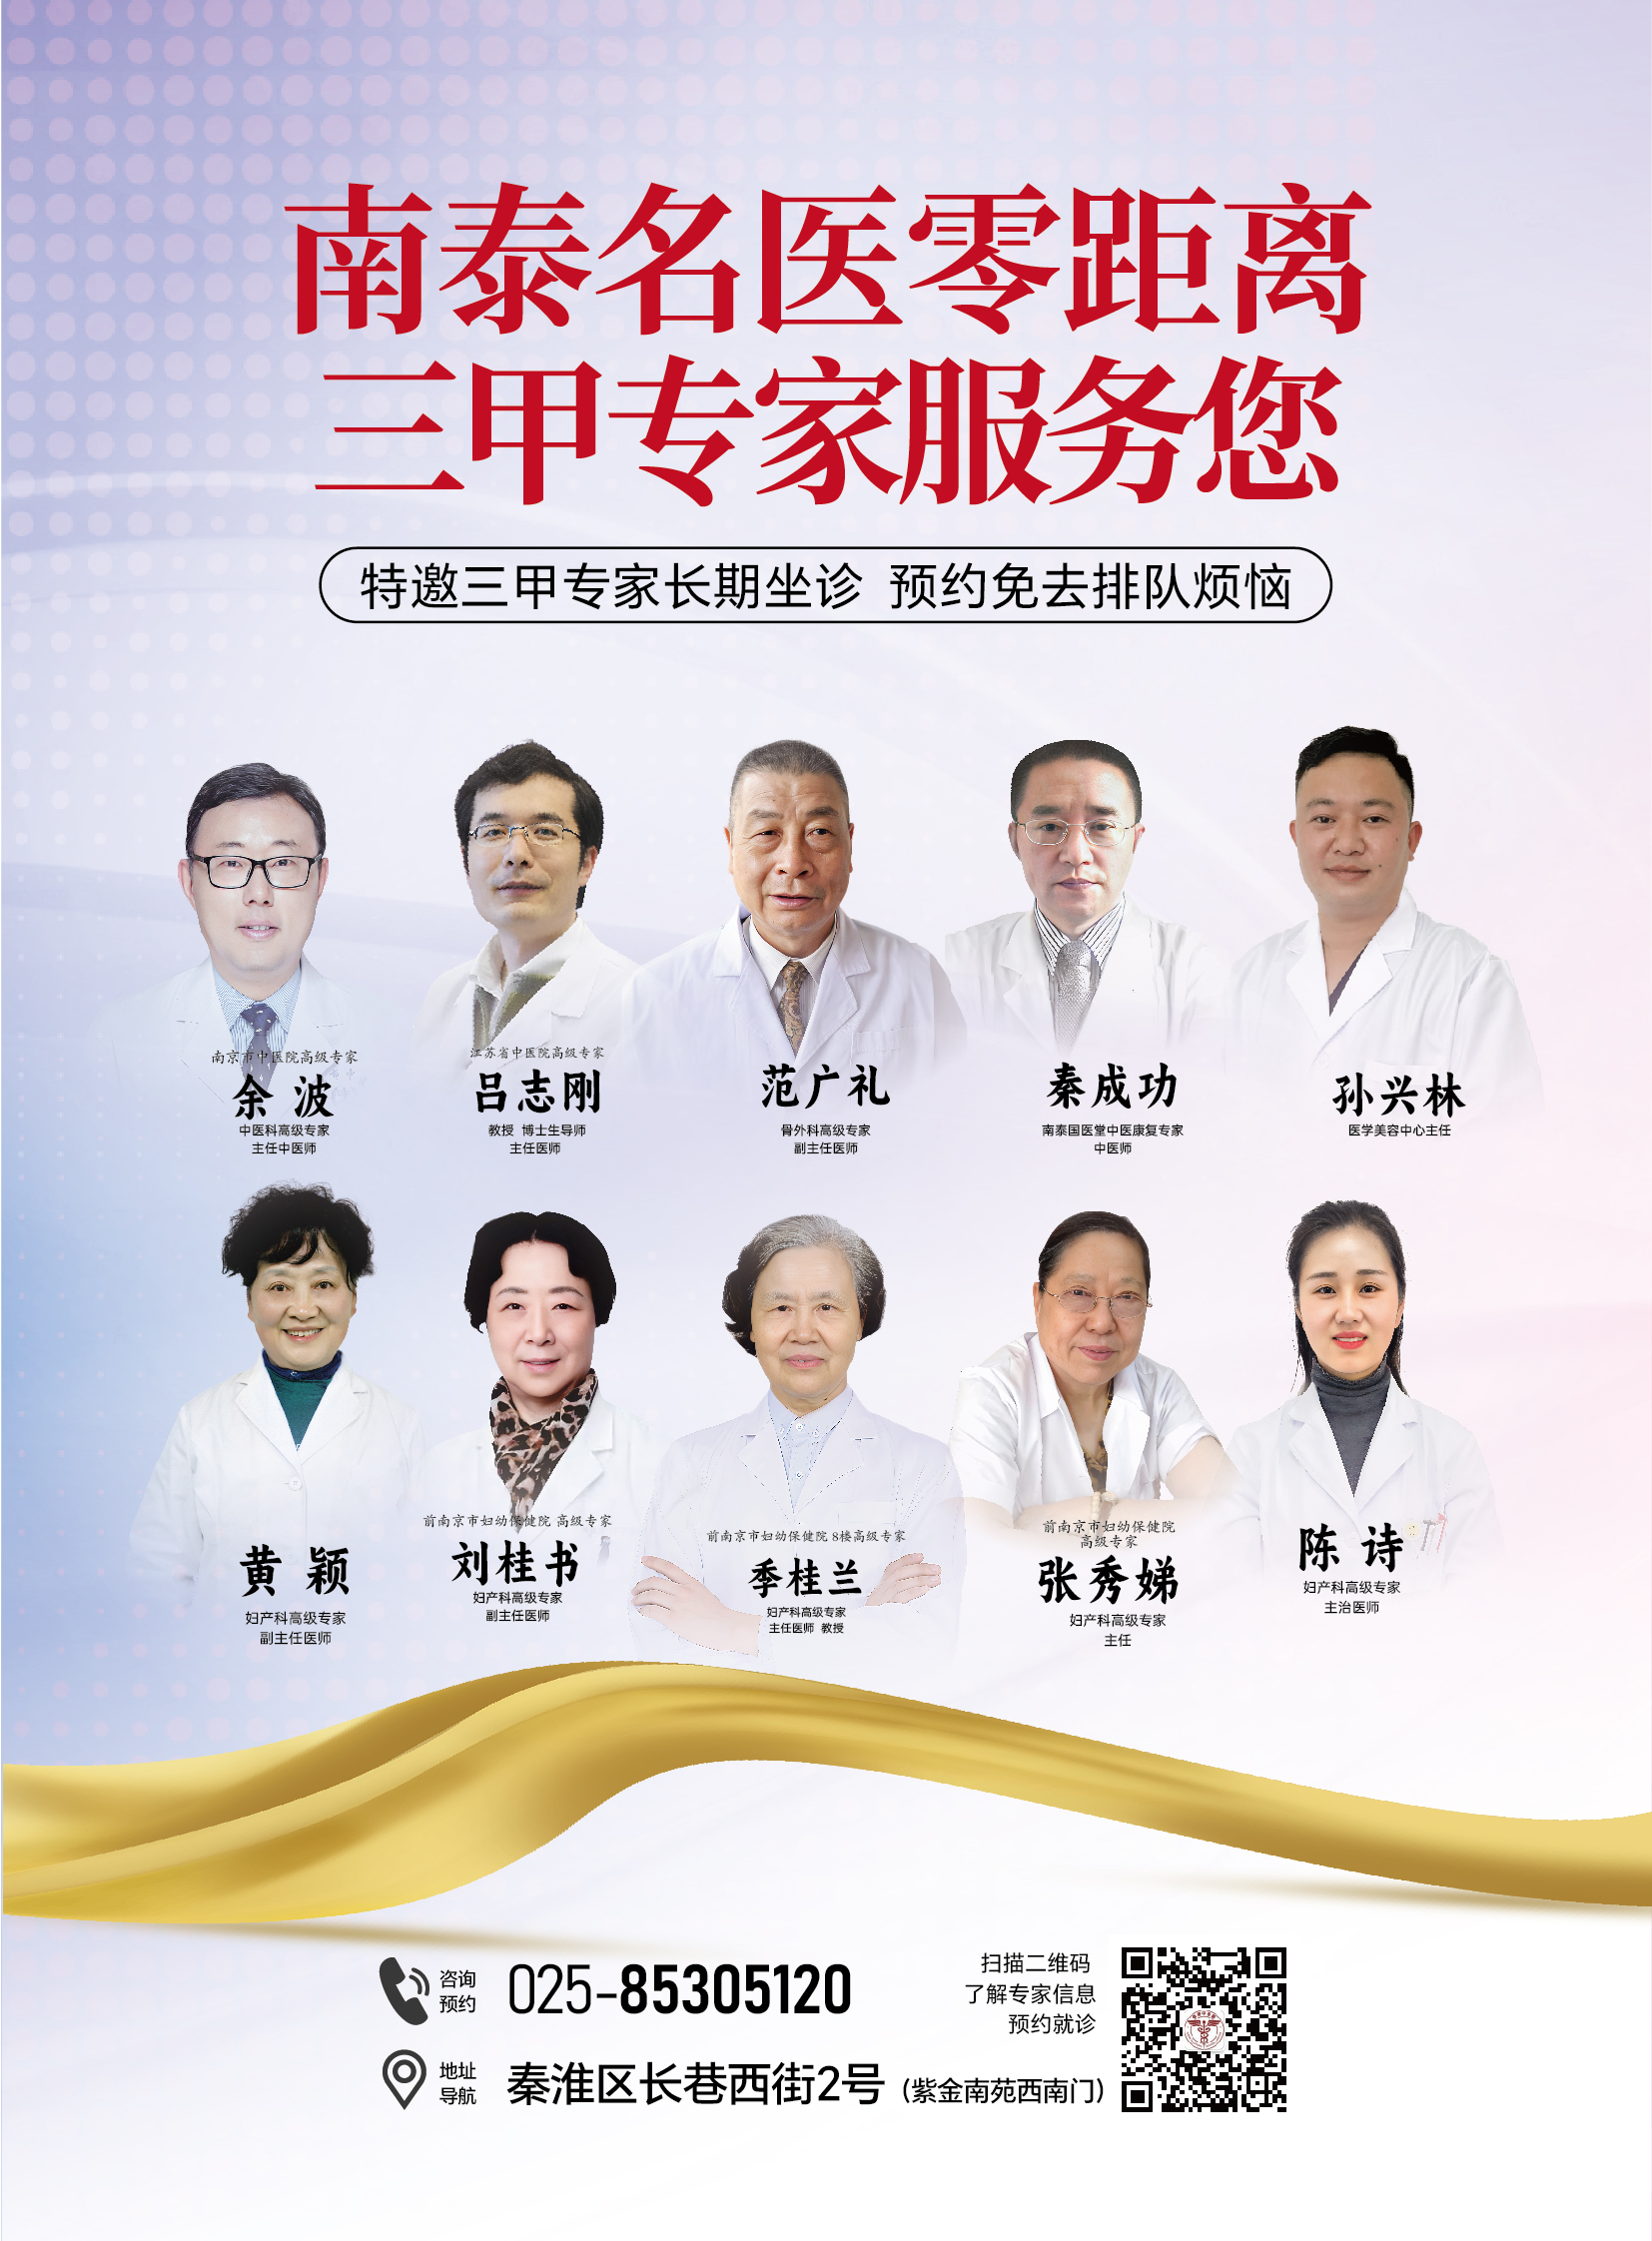 南京婦幼專家會診中心入駐南京南泰中西醫結合醫院